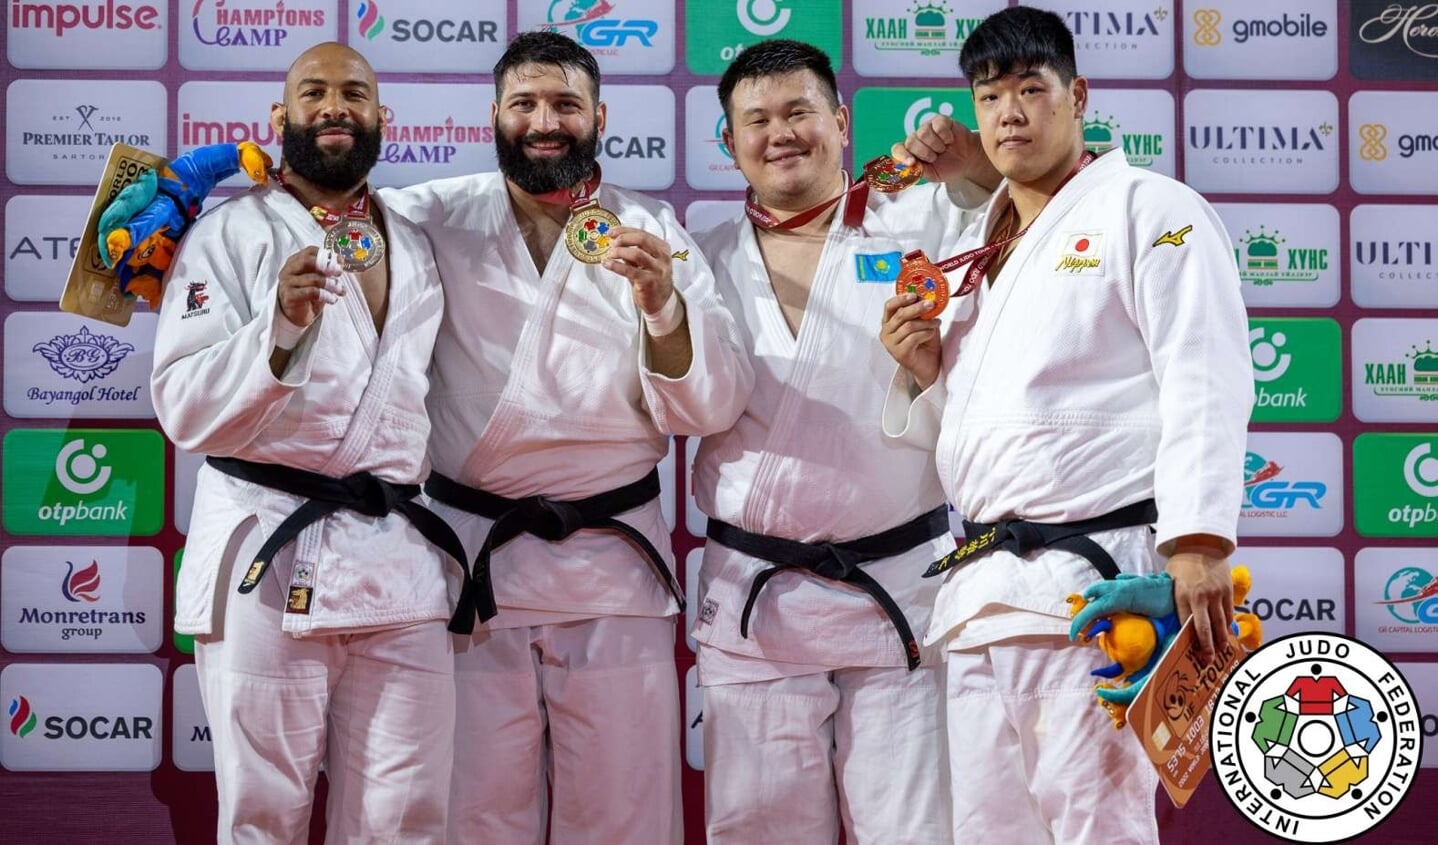 Judoka Roy Meyer uit Hoogvliet is zijn kwalificatie richting de Olympische Spelen super goed begonnen door zilver te pakken op de Grand Slam van Ulaanbaatar. Foto: pr